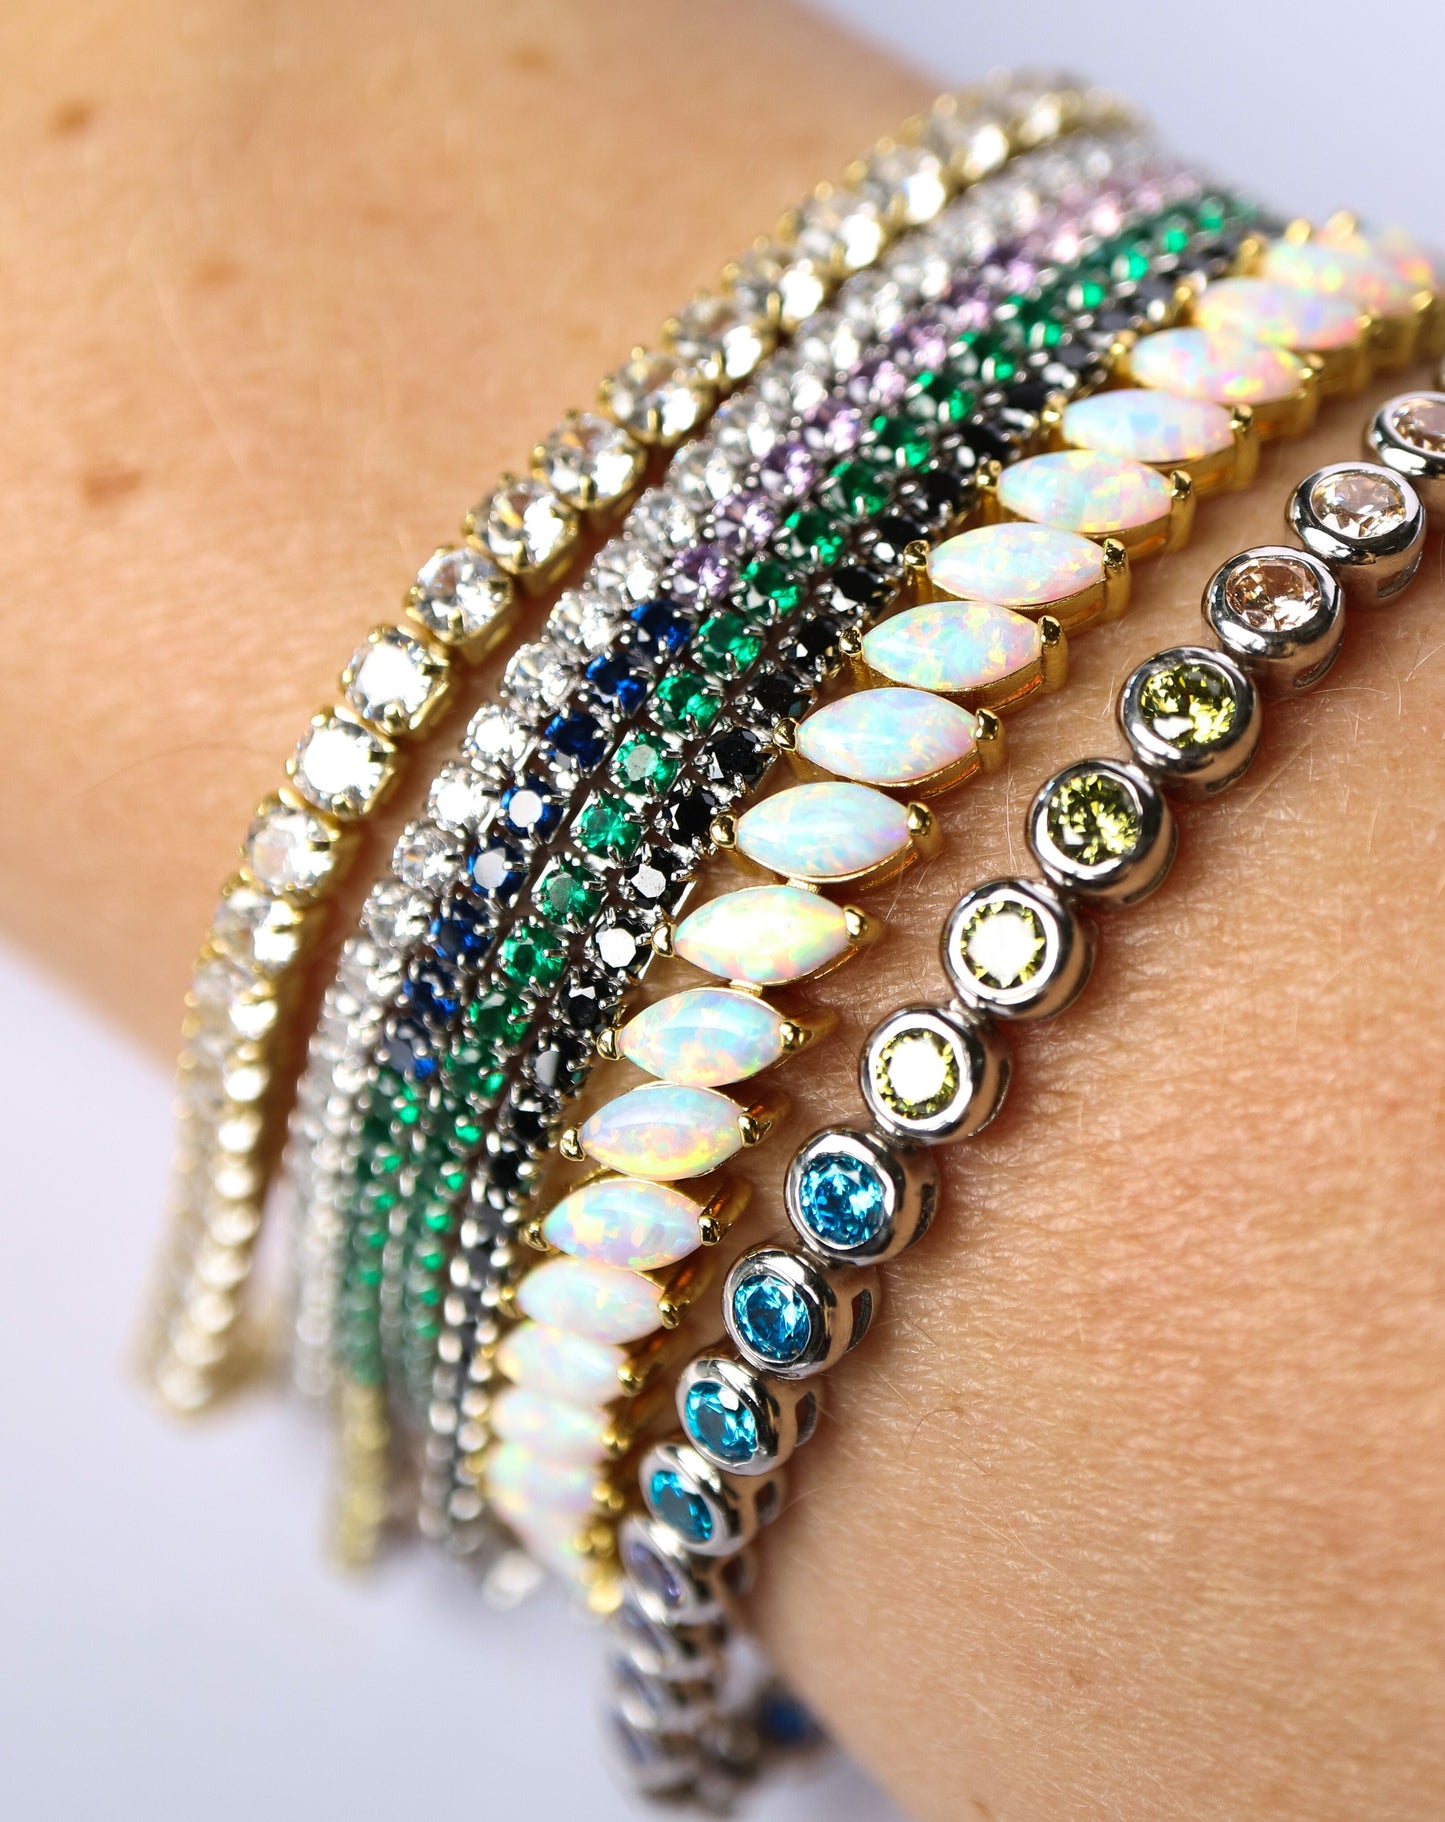 Sterling silver tennis bracelets on female wrist